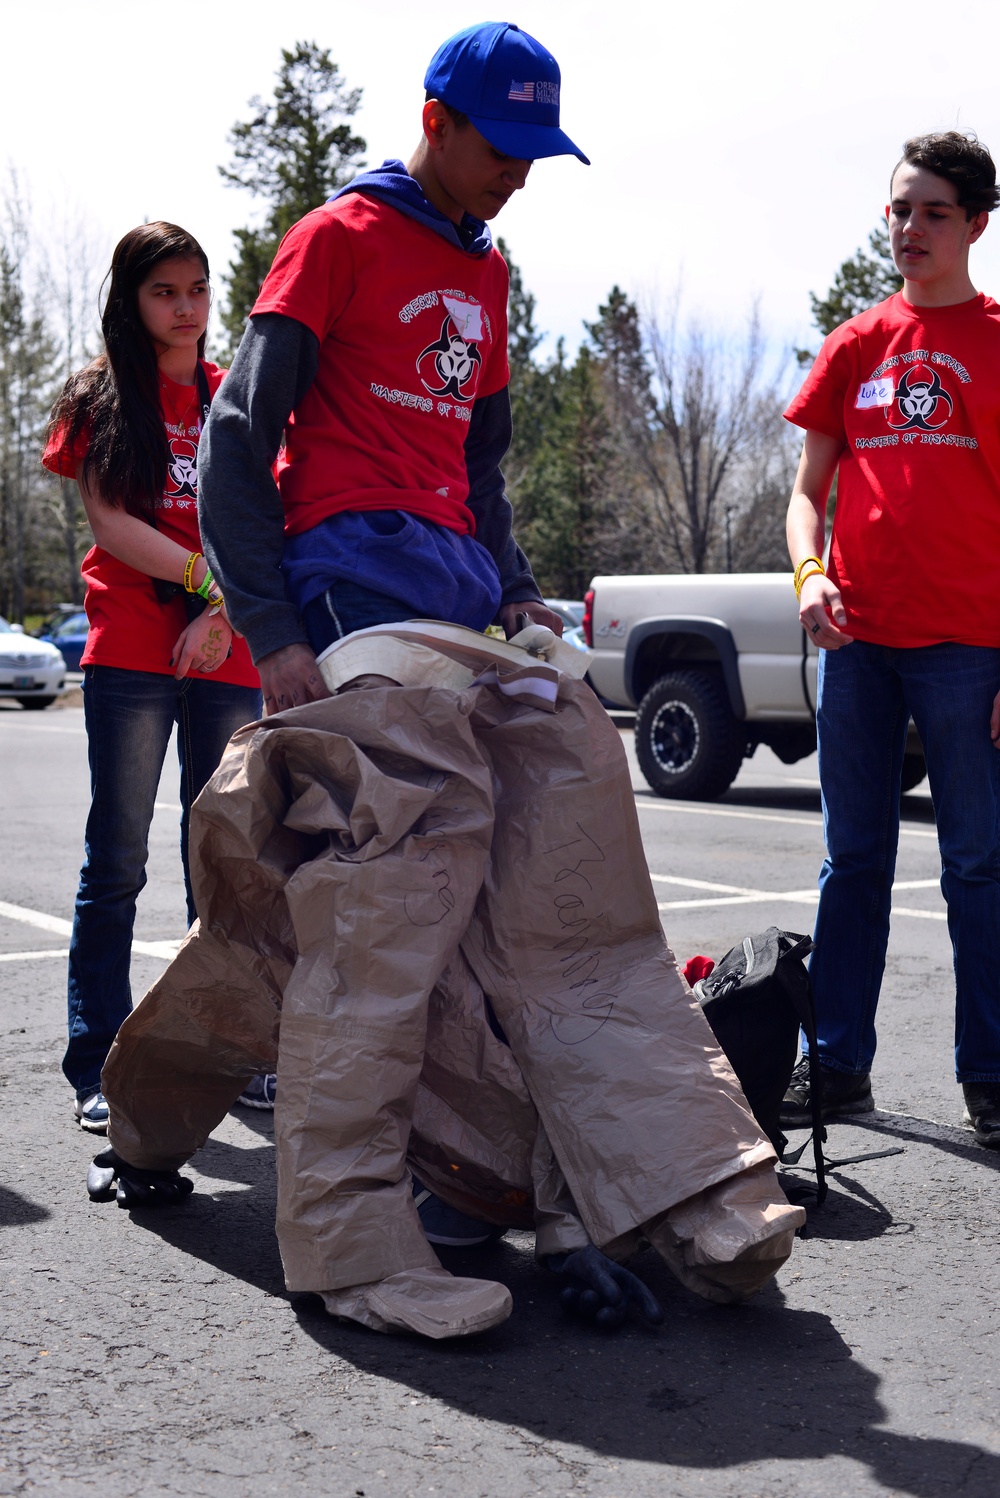 Oregon youth learn emergency preparedness skills